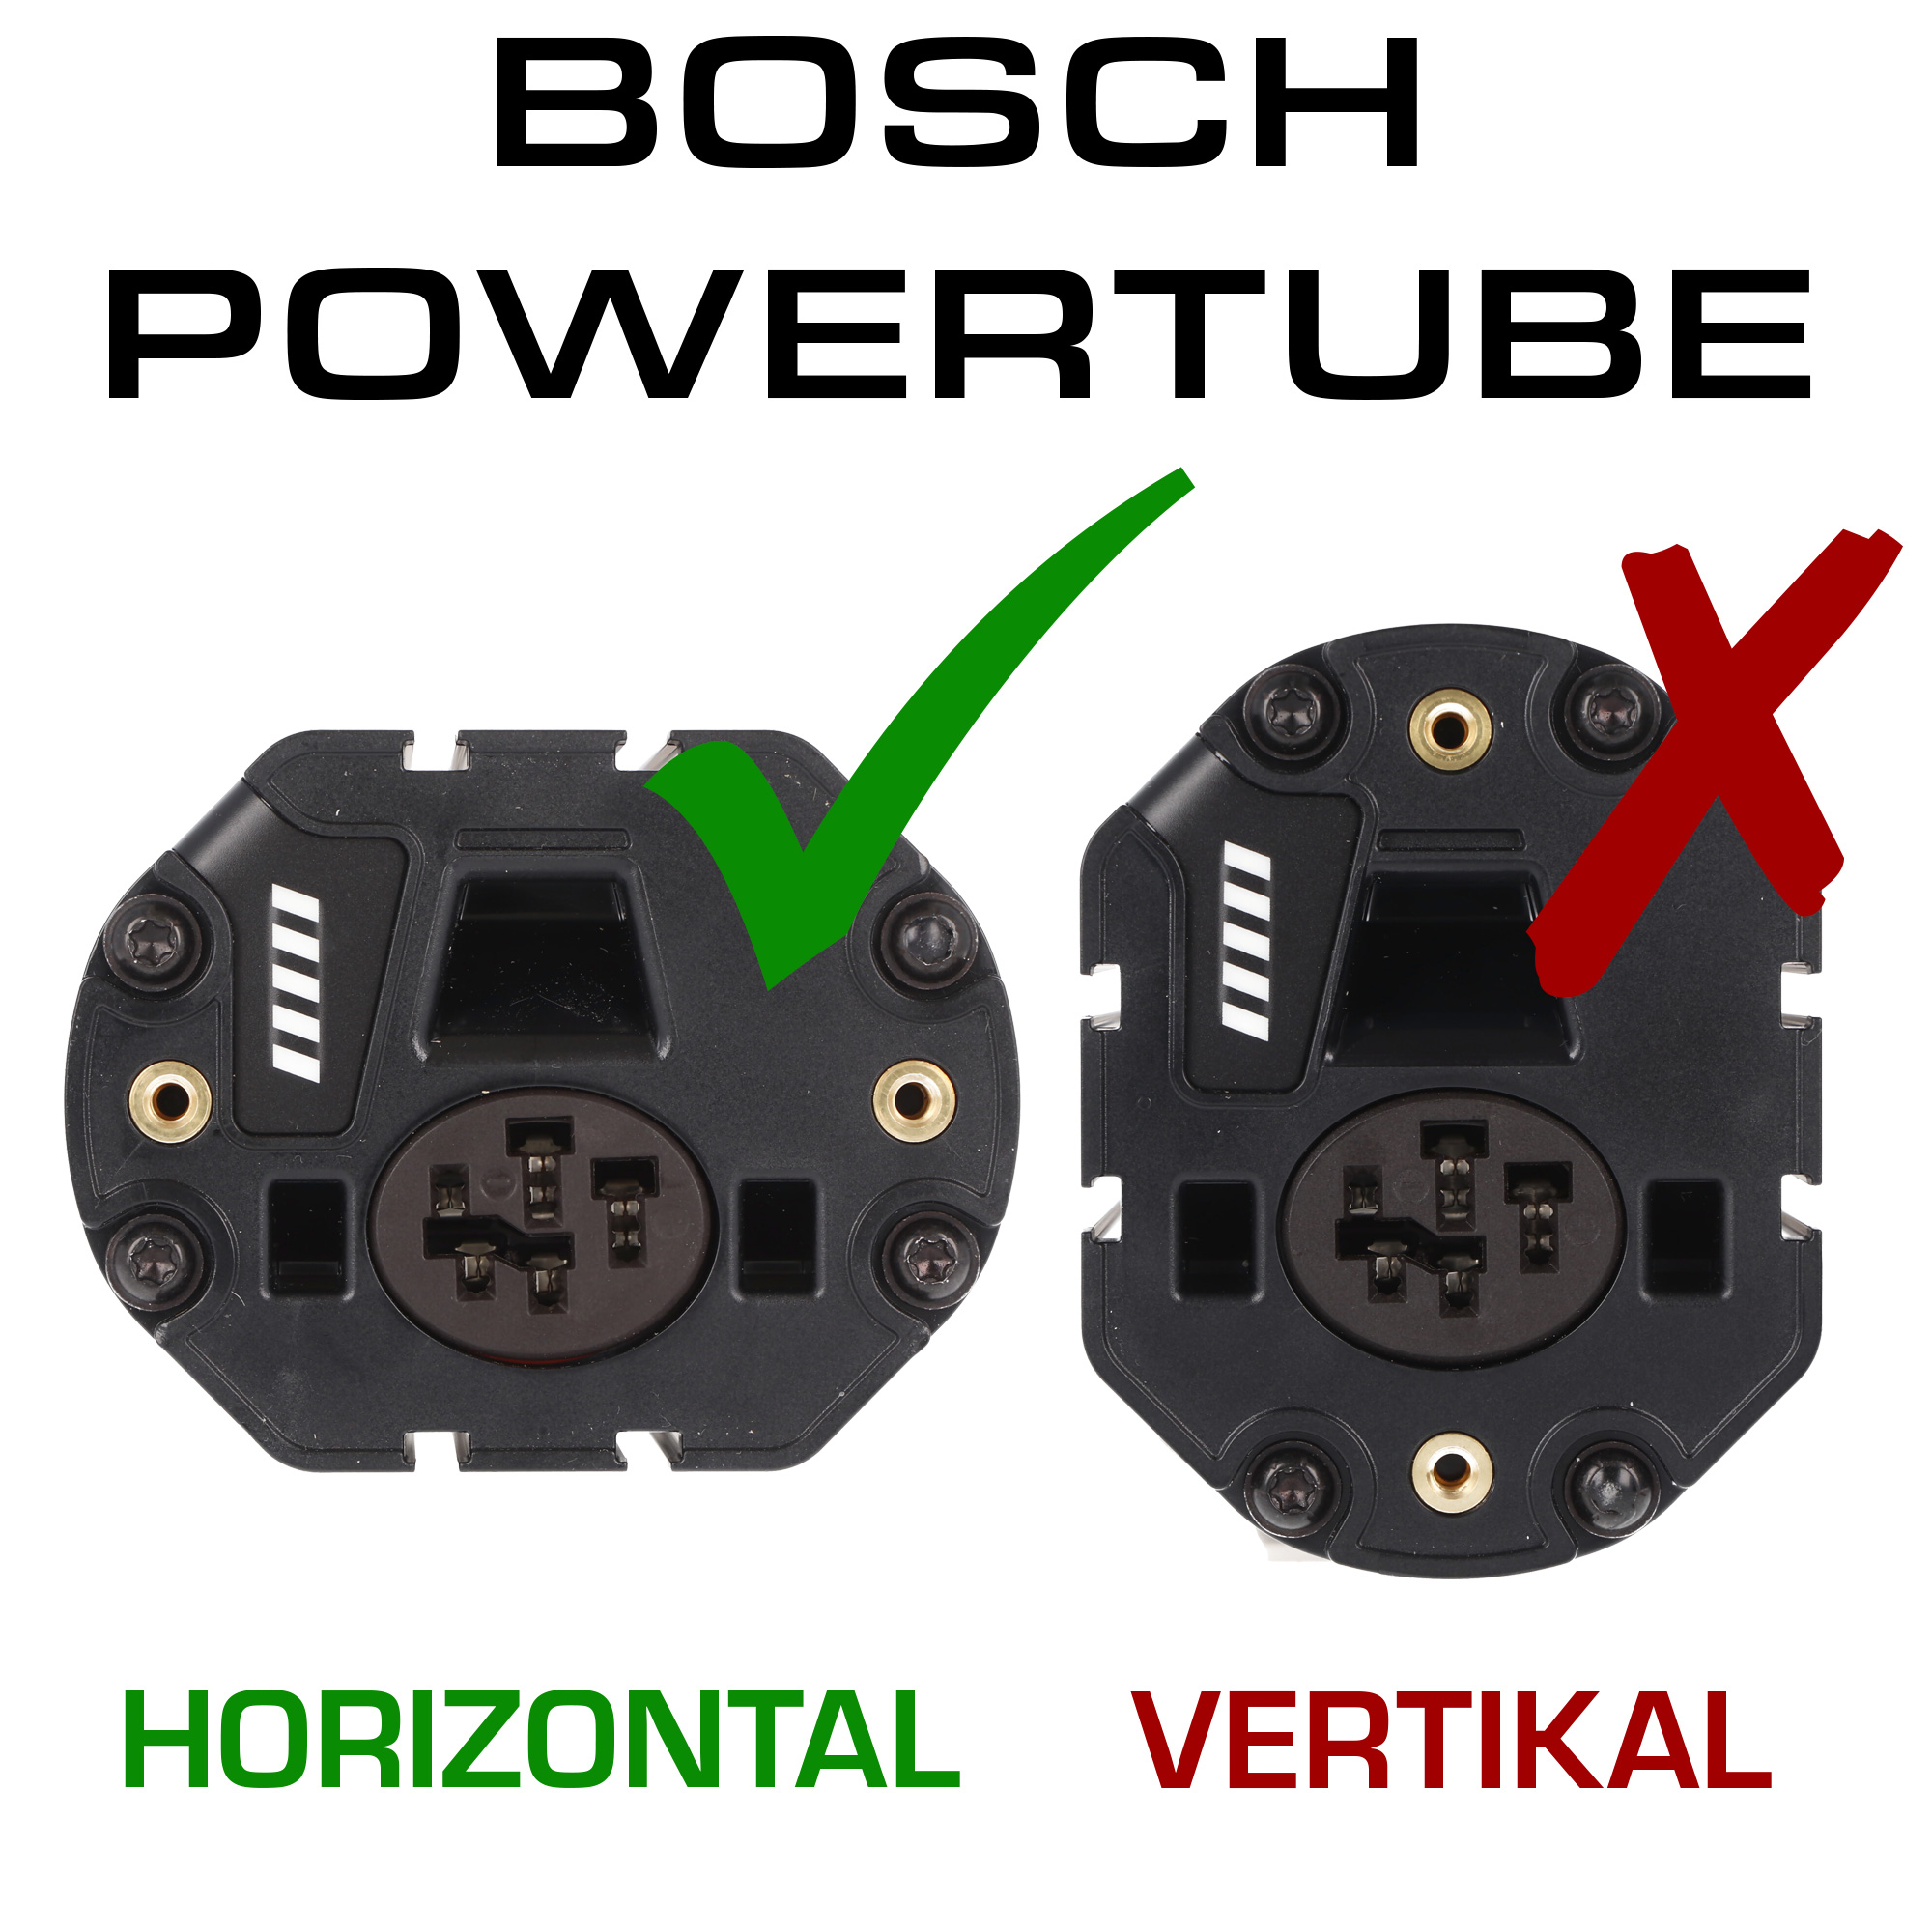 500Wh Bosch e-bike Akkutyp PowerTube 500 horizontal Akku Bosch 275007539 BBP280, 36cm Lang